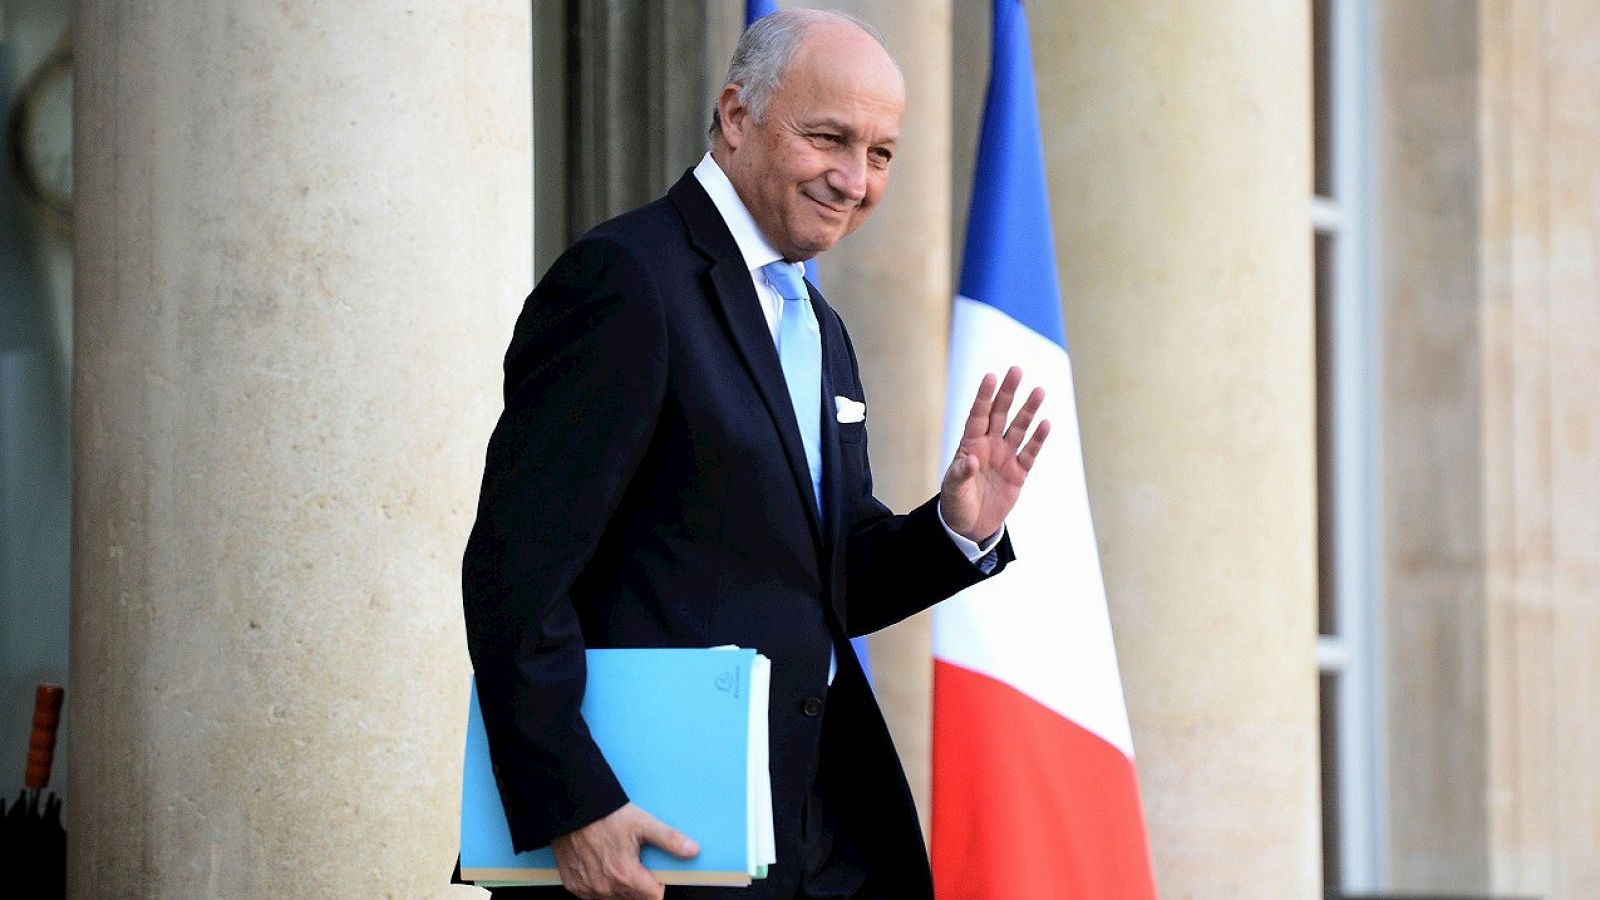 El ministro de Exteriores francés, Laurent Fabius, abandona el Palacio del Elíseo, en París, el 10 de febrero de 2016. AFP PHOTO / STEPHANE DE SAKUTIN